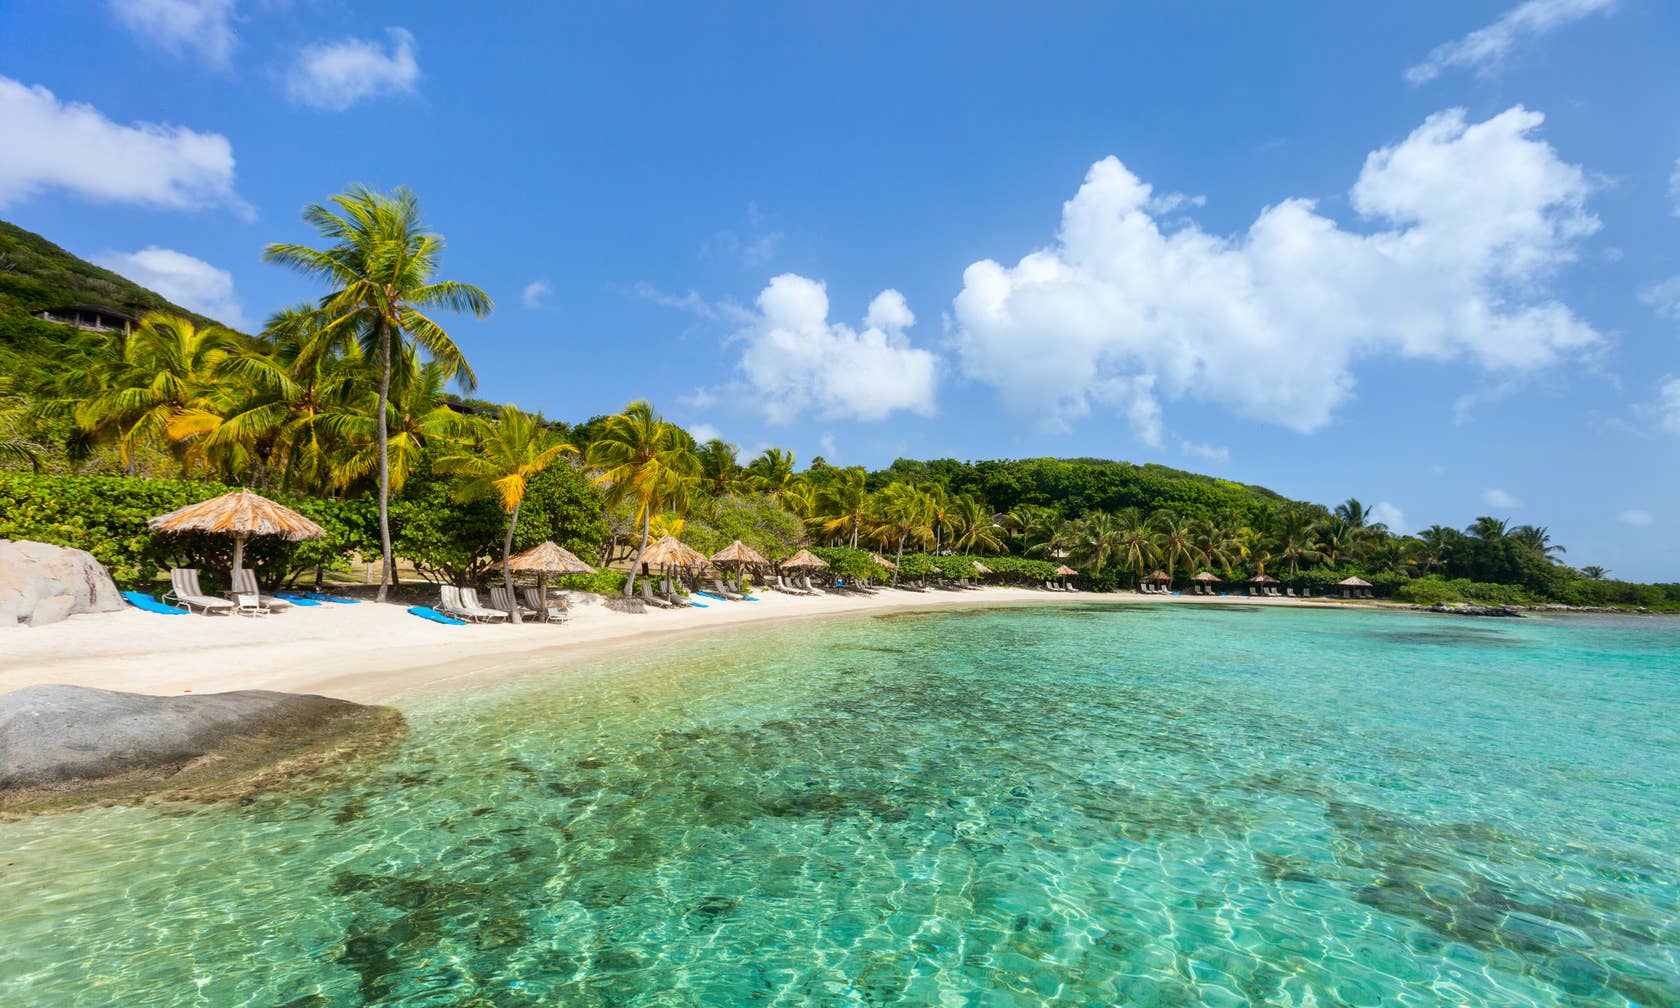 Sewaan percutian di Caribbean